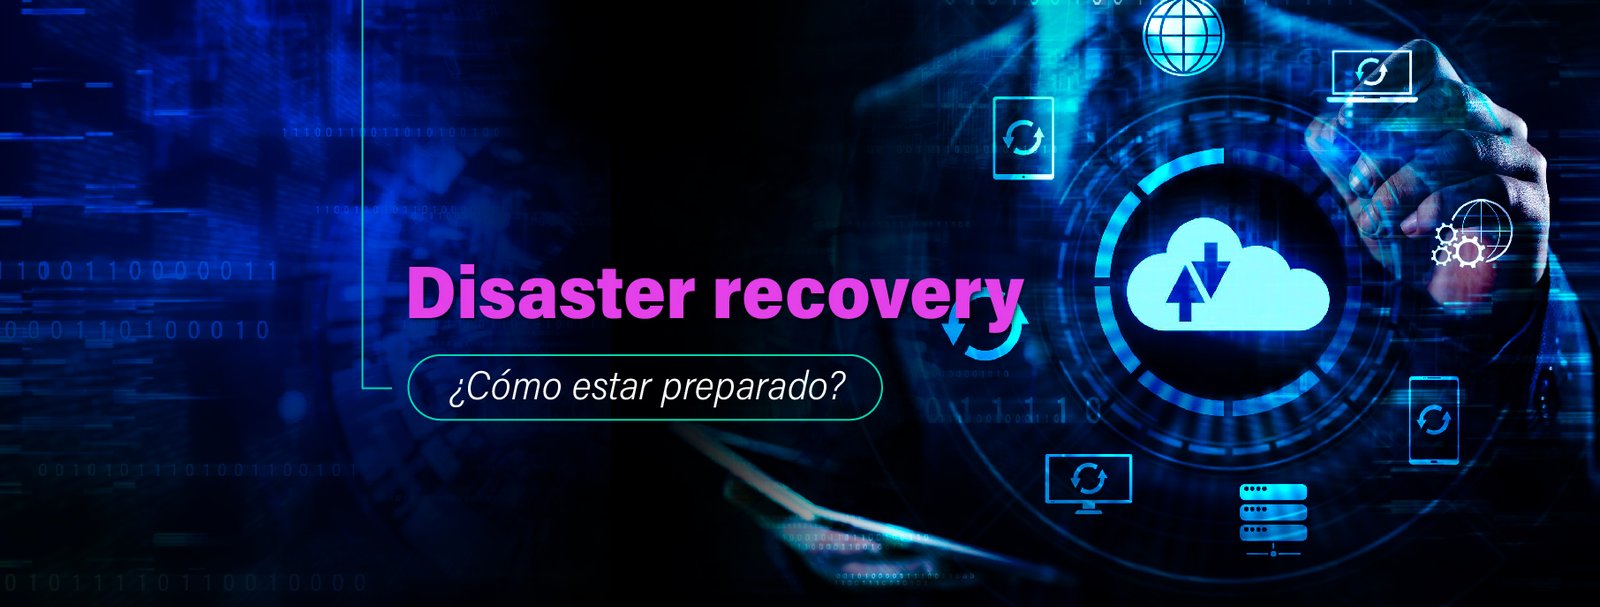 Disaster recovery: qué es y cómo elaborar una estrategia efectiva.